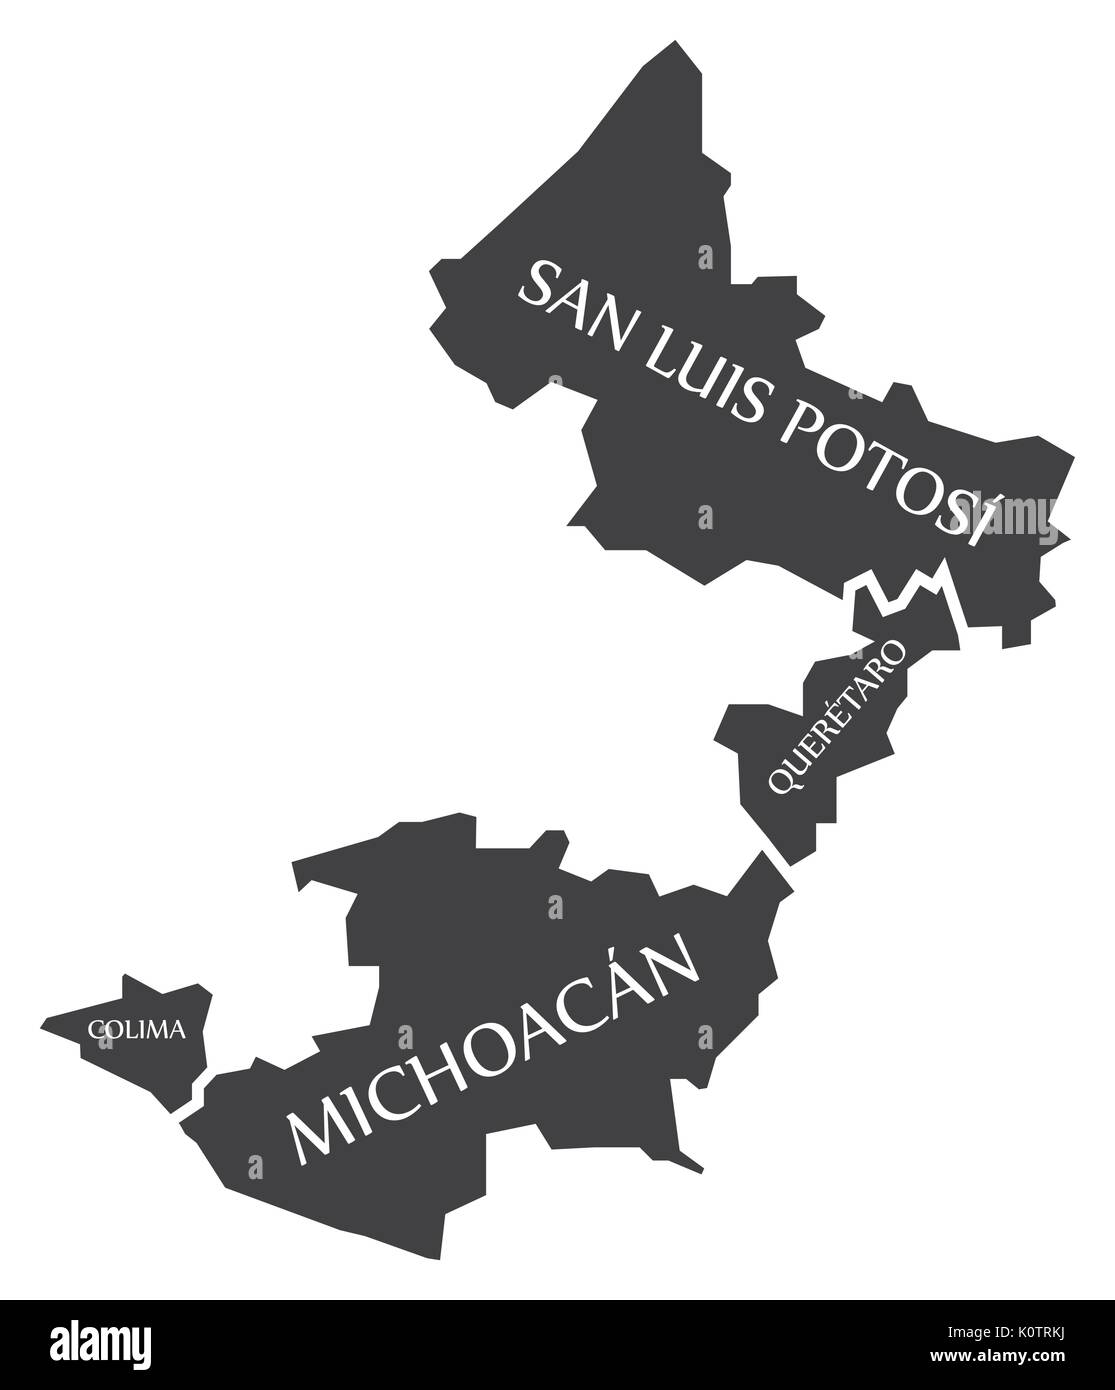 San Luis Potosi - Queretaro - Michoacan - Colima Map Mexico illustration Stock Vector